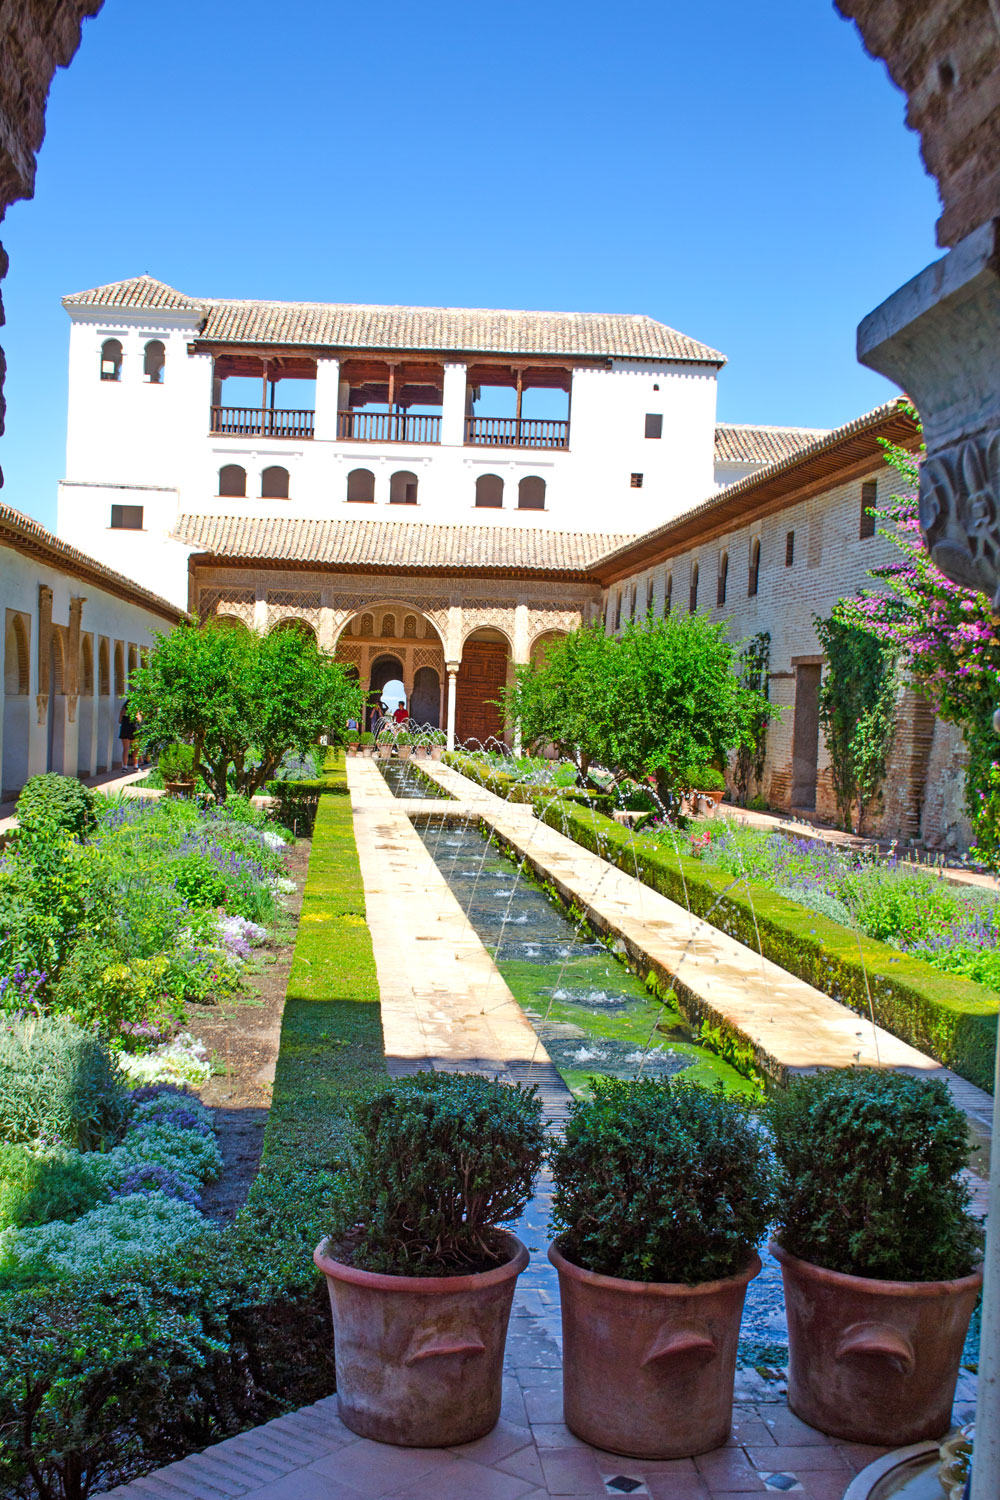 [unbezahlte werbung] La Alhambra - Was man für einen Besuch wissen muss | Die Palast-Gärten